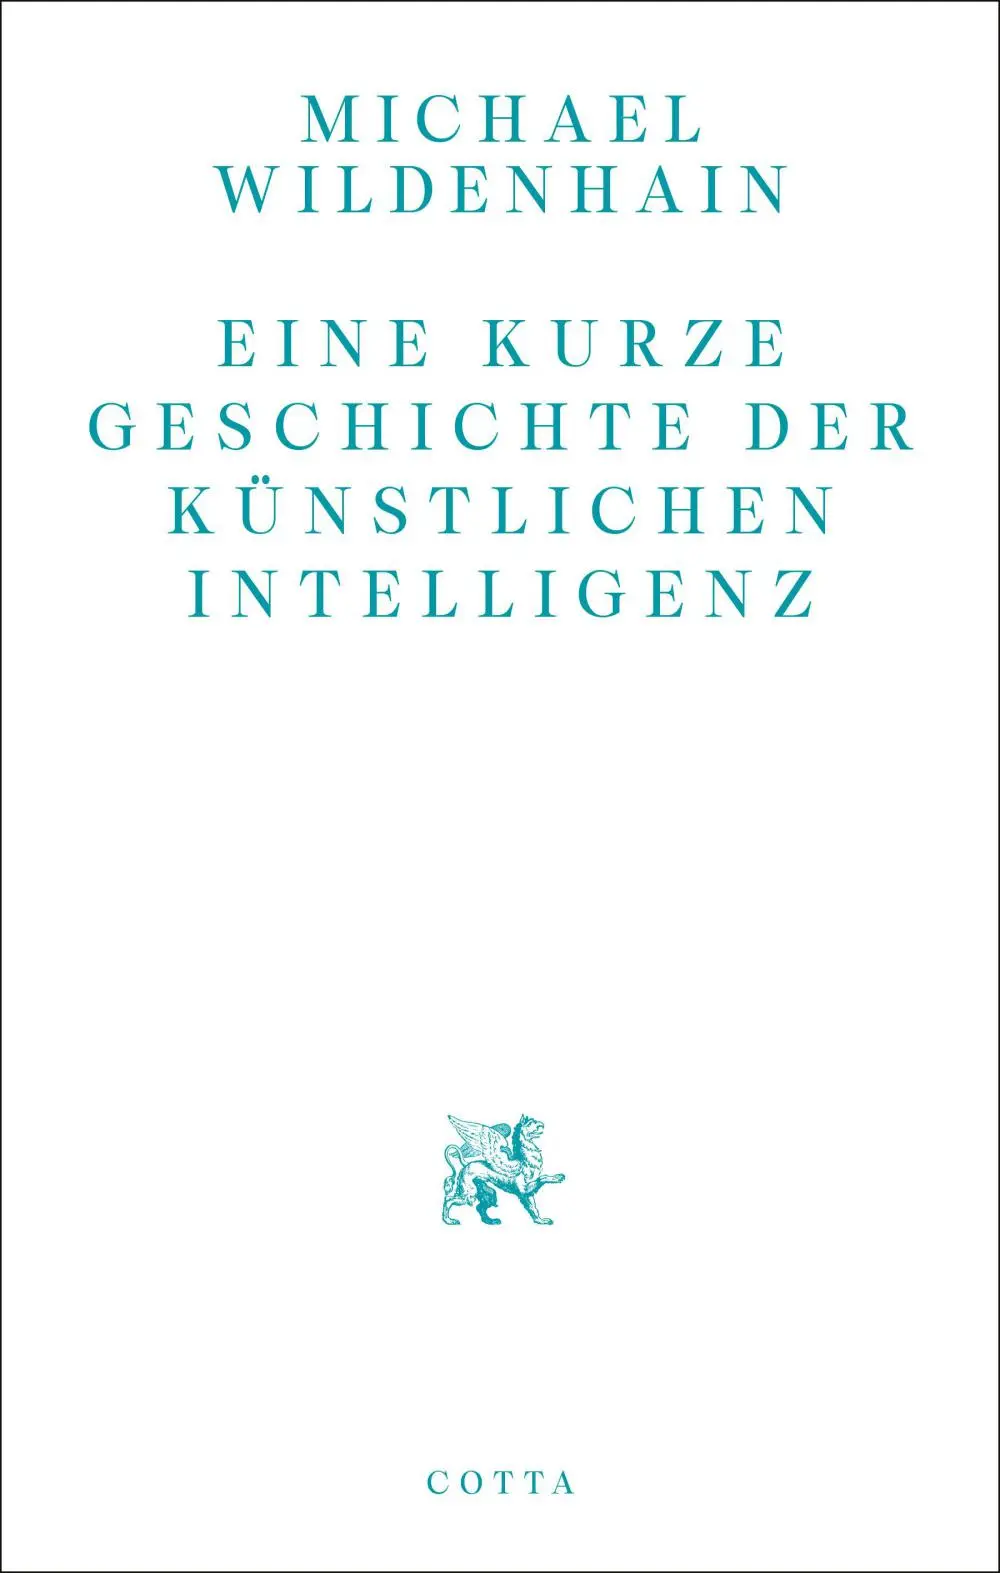 Buchcover: Michael Wildenhain Eine kurze Geschichte der Künstlichen Intelligenz